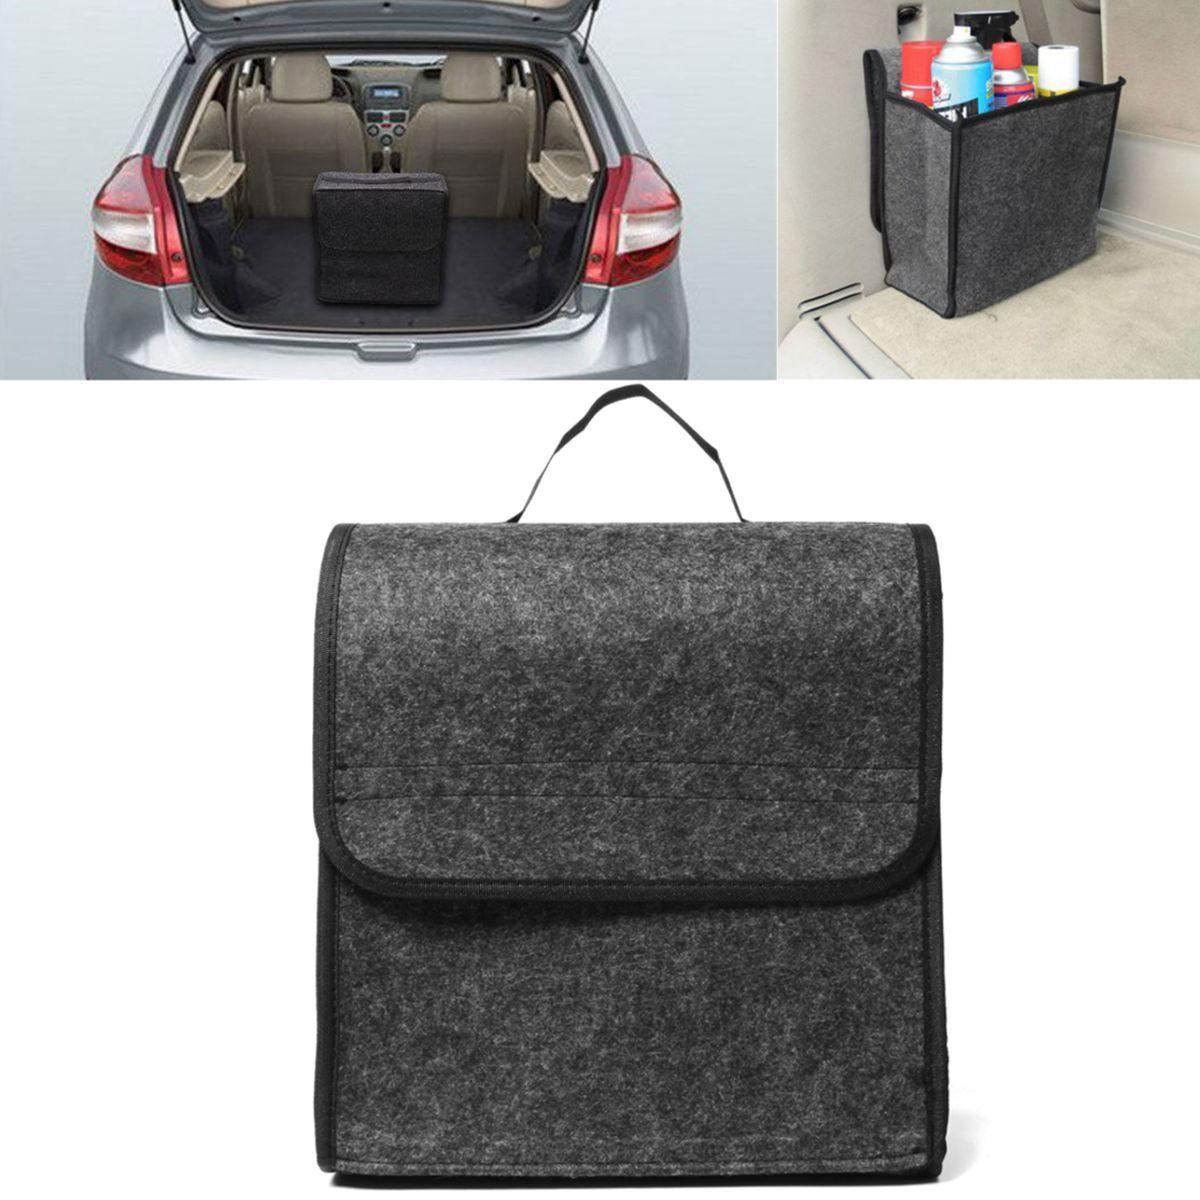 11.8x11.4 x6.3inch Felt Cloth Πτυσσόμενο Αυτοκίνητο Πίσω Κάθισμα Organizer Travel Storage Εσωτερική τσάντα